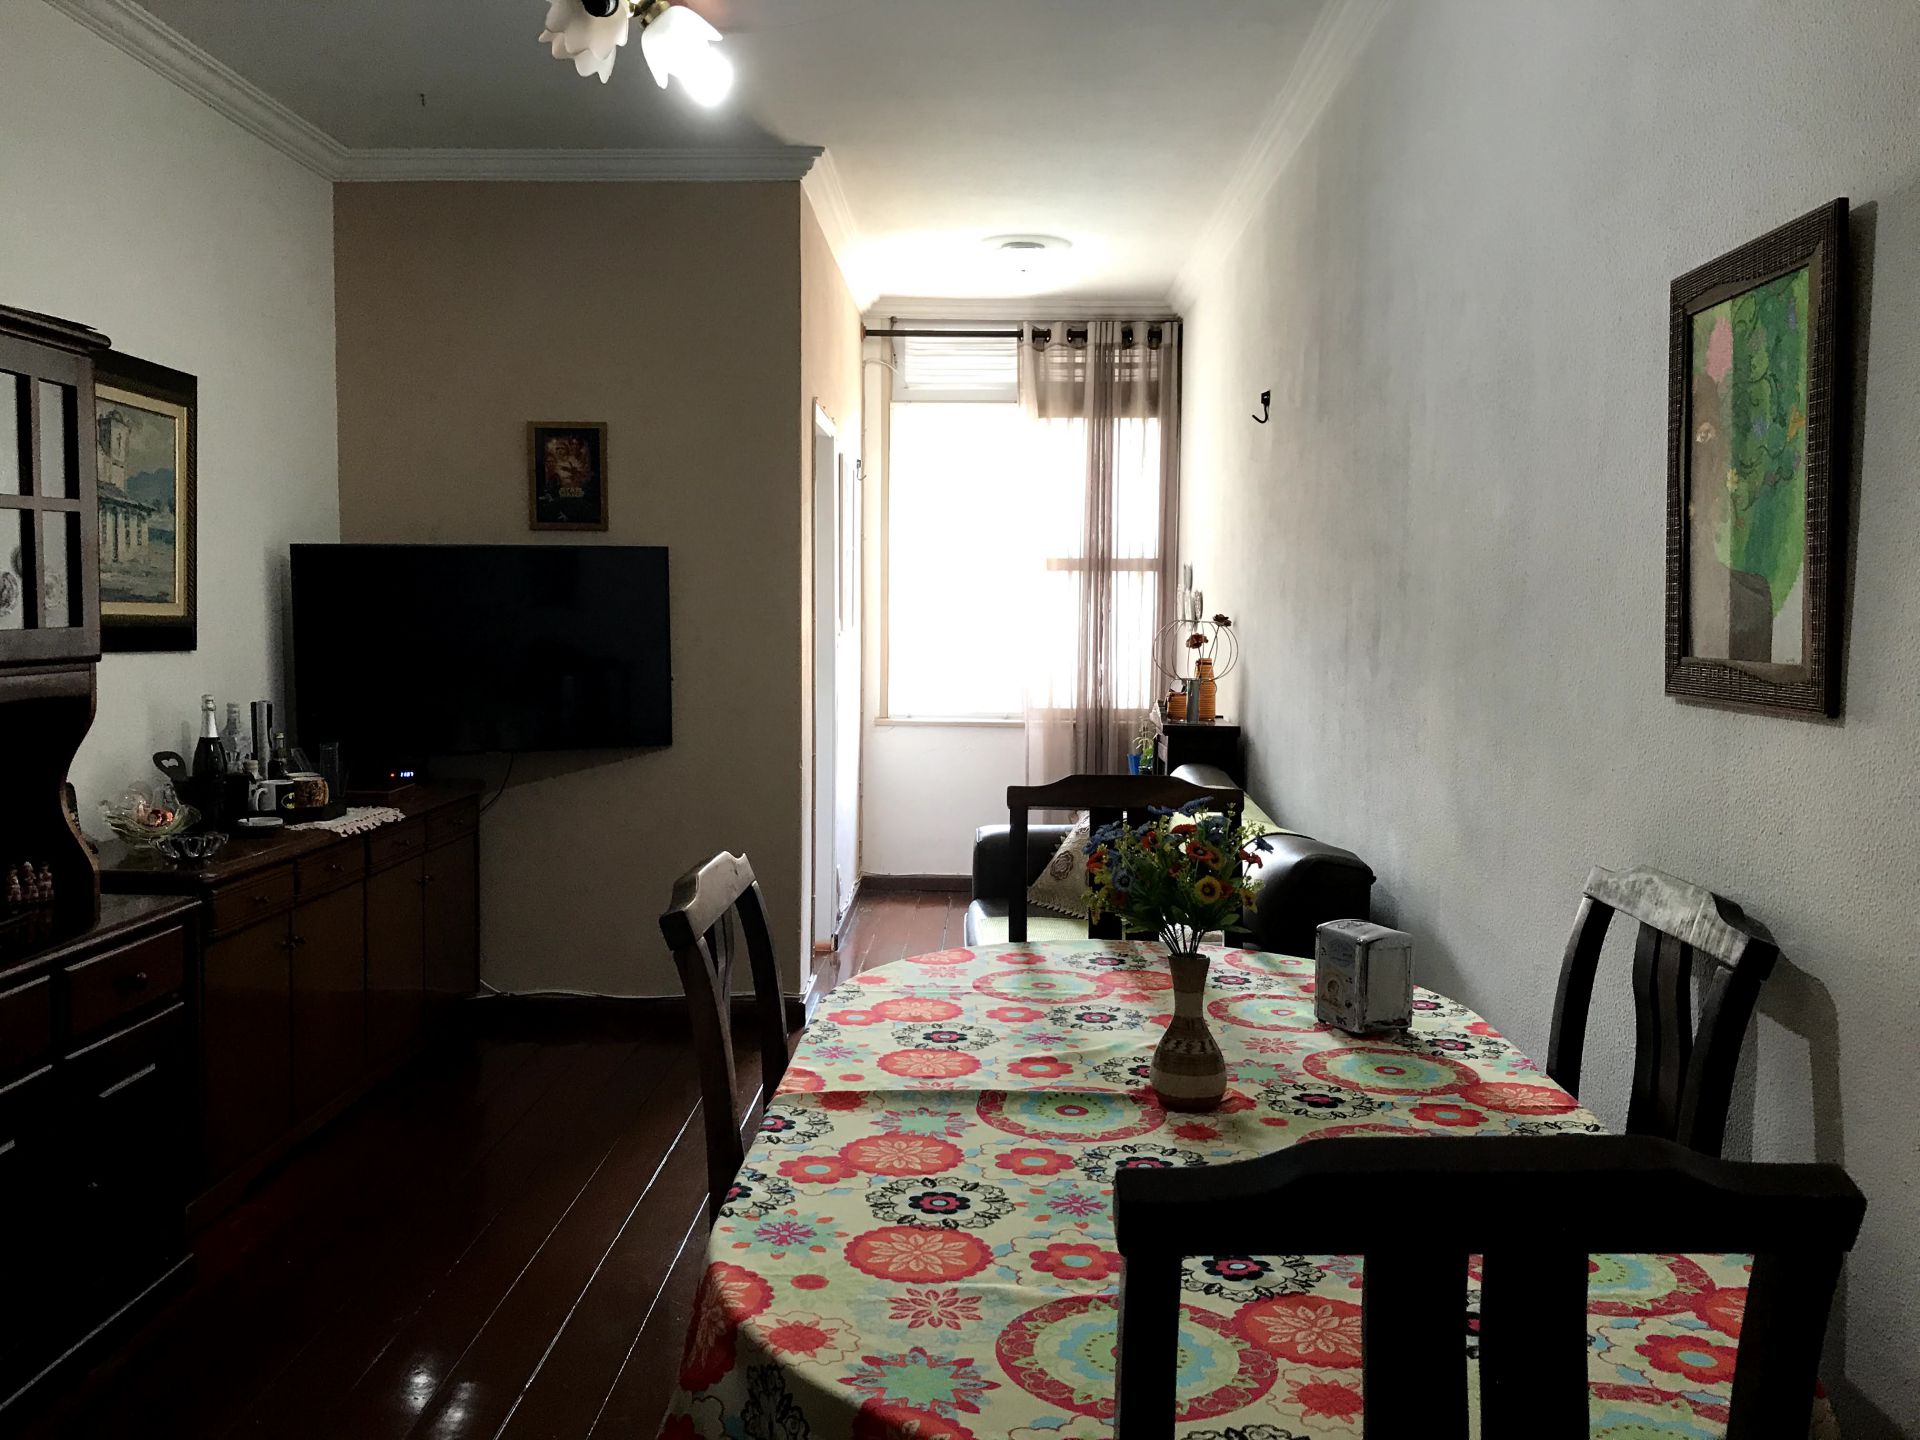 FOTO 1 - Apartamento à venda Avenida Marechal Fontenele,Jardim Sulacap, Rio de Janeiro - R$ 210.000 - RF168 - 1